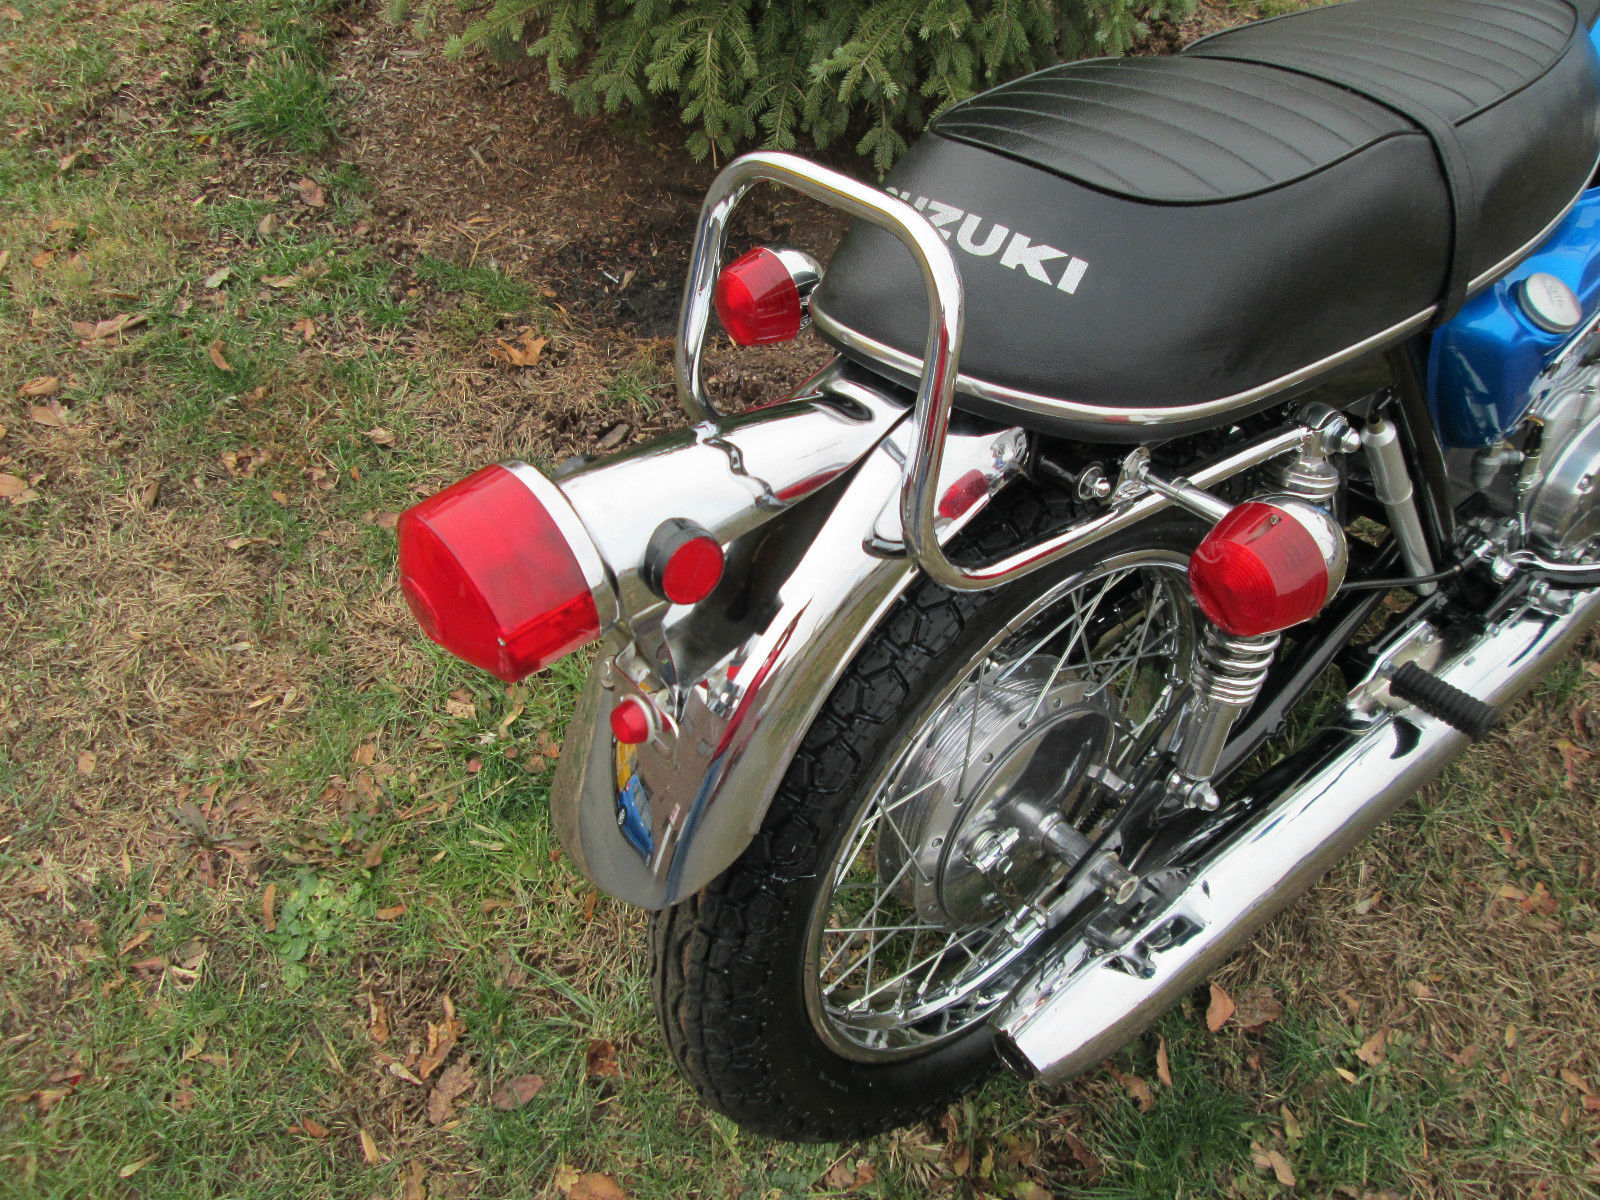 Suzuki T500 - 1970